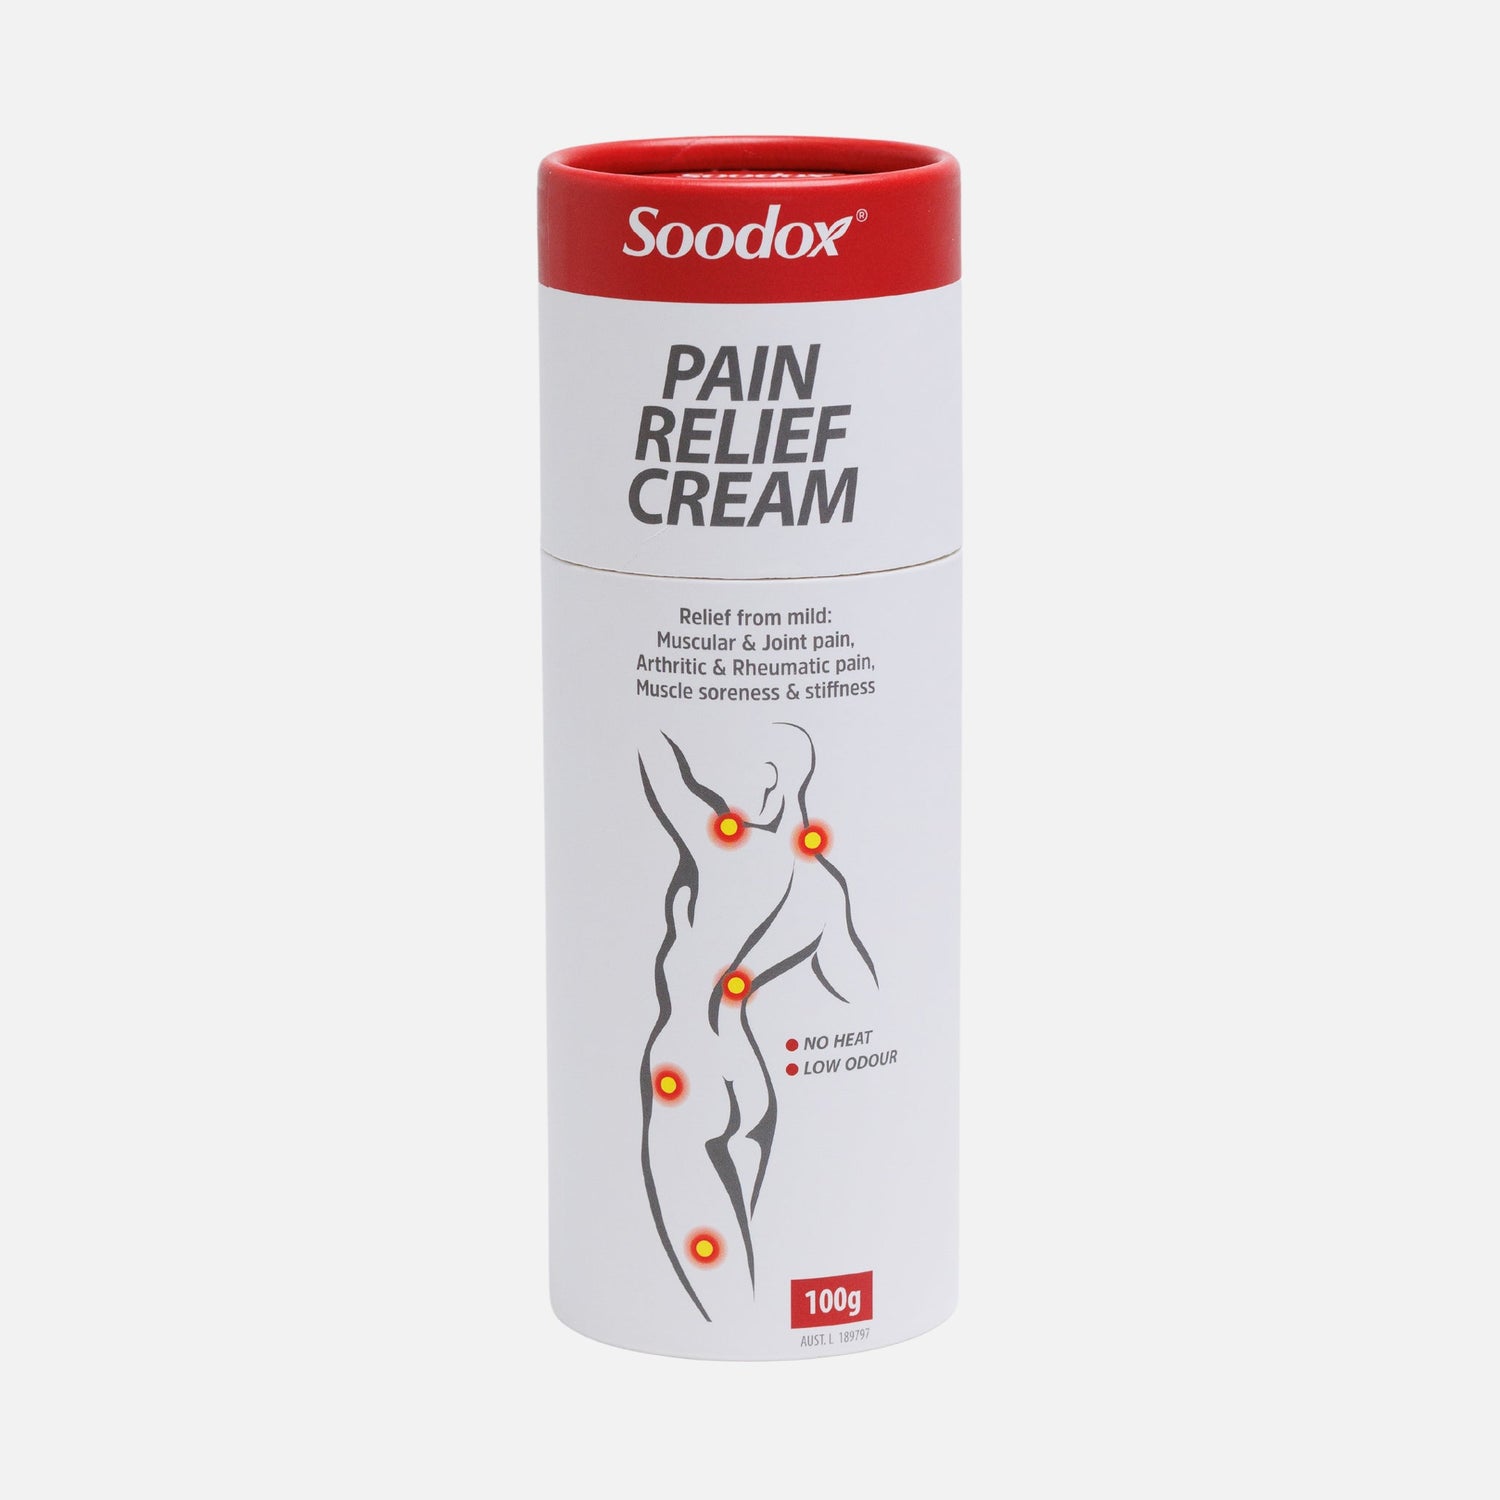 Original Pain Relief Cream 2 Pack